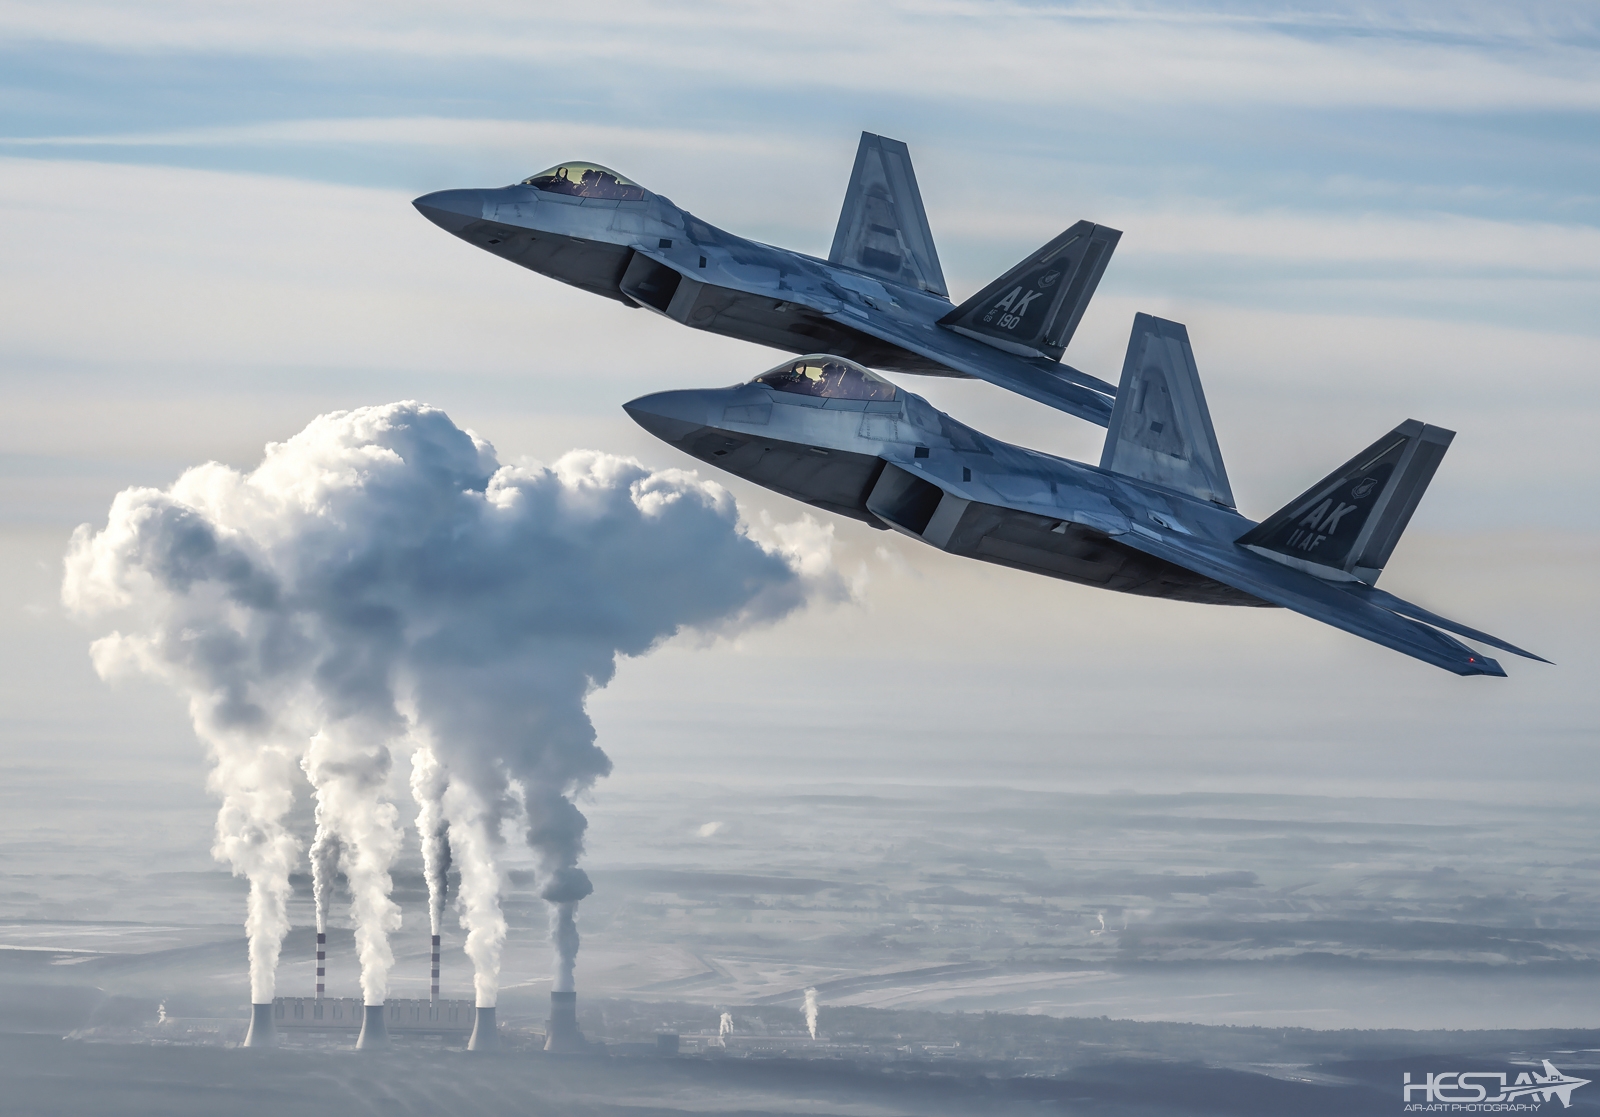 Styczeń/January 12.10.2022. NATO Air Shielding. U.S. Air Force Lockheed Martin F-22 Raptors over Bełchatów Power Plant. Nikon Z9. Nikkor Z 100-400 mm f/4.5-5.6 VR S (115mm 1/1250 f/7,1 ISO 125).